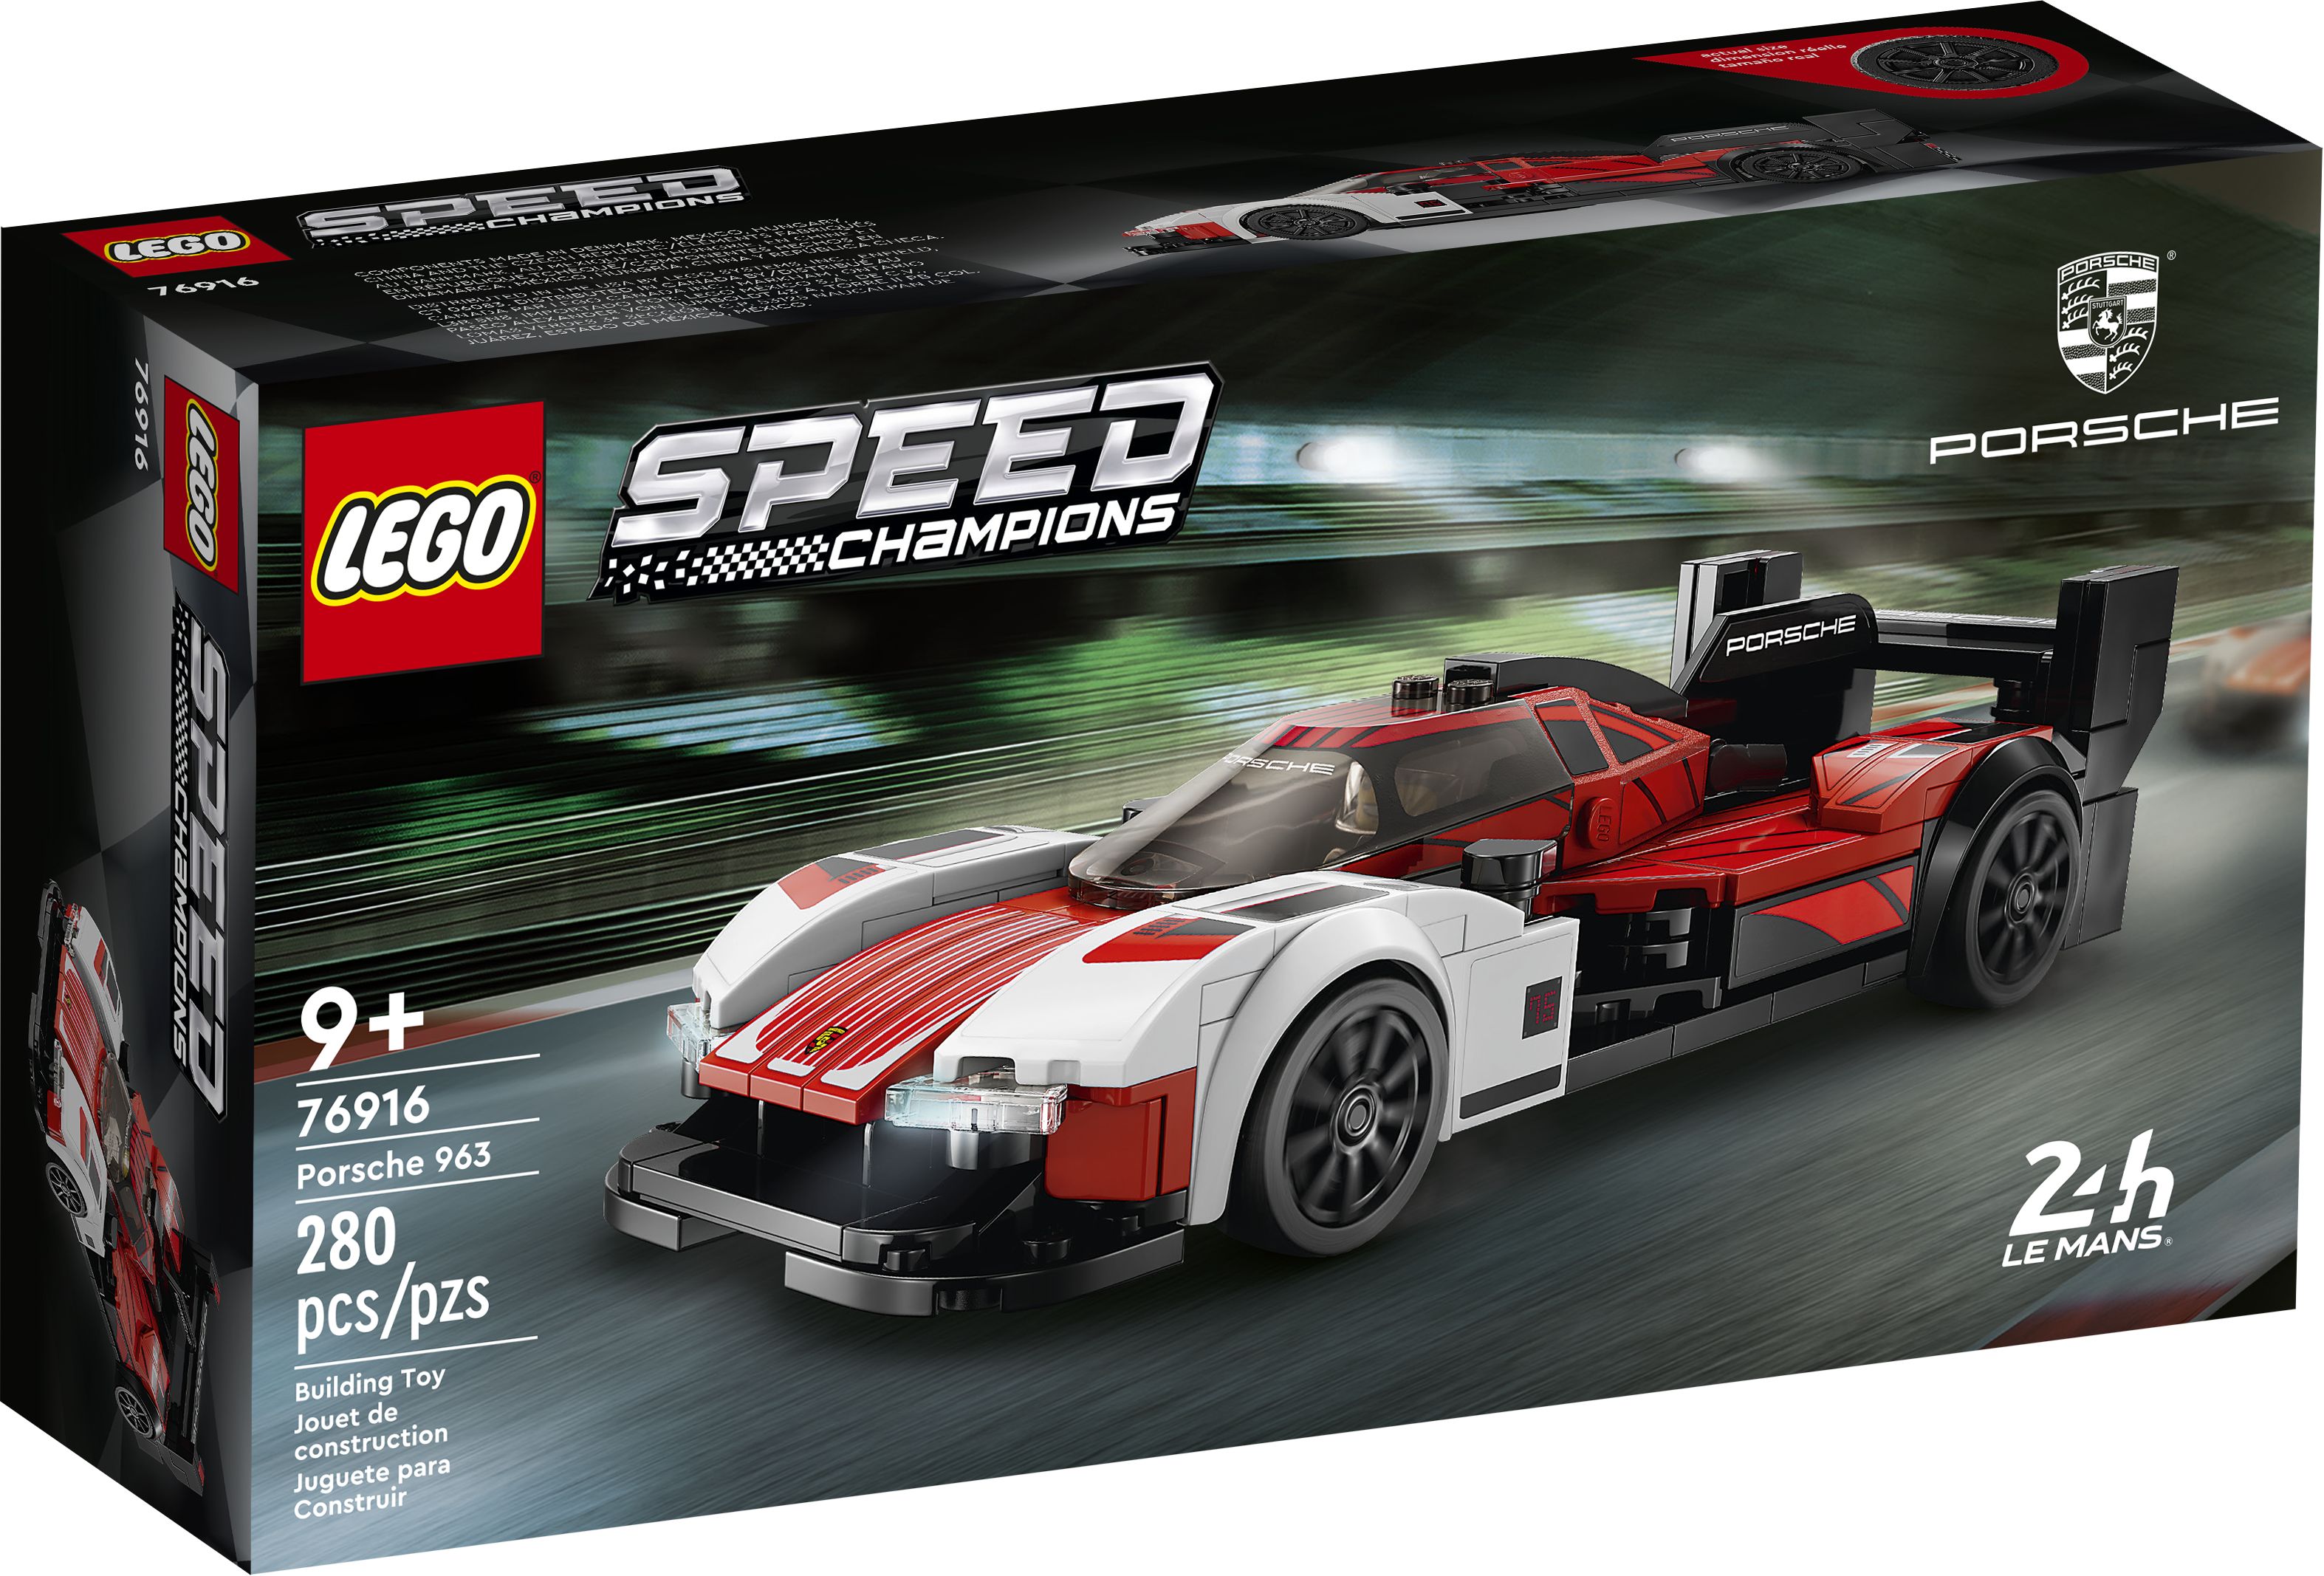 LEGO Speed Champions 76916 Porsche 963 LEGO_76916_Box1_v39.jpg